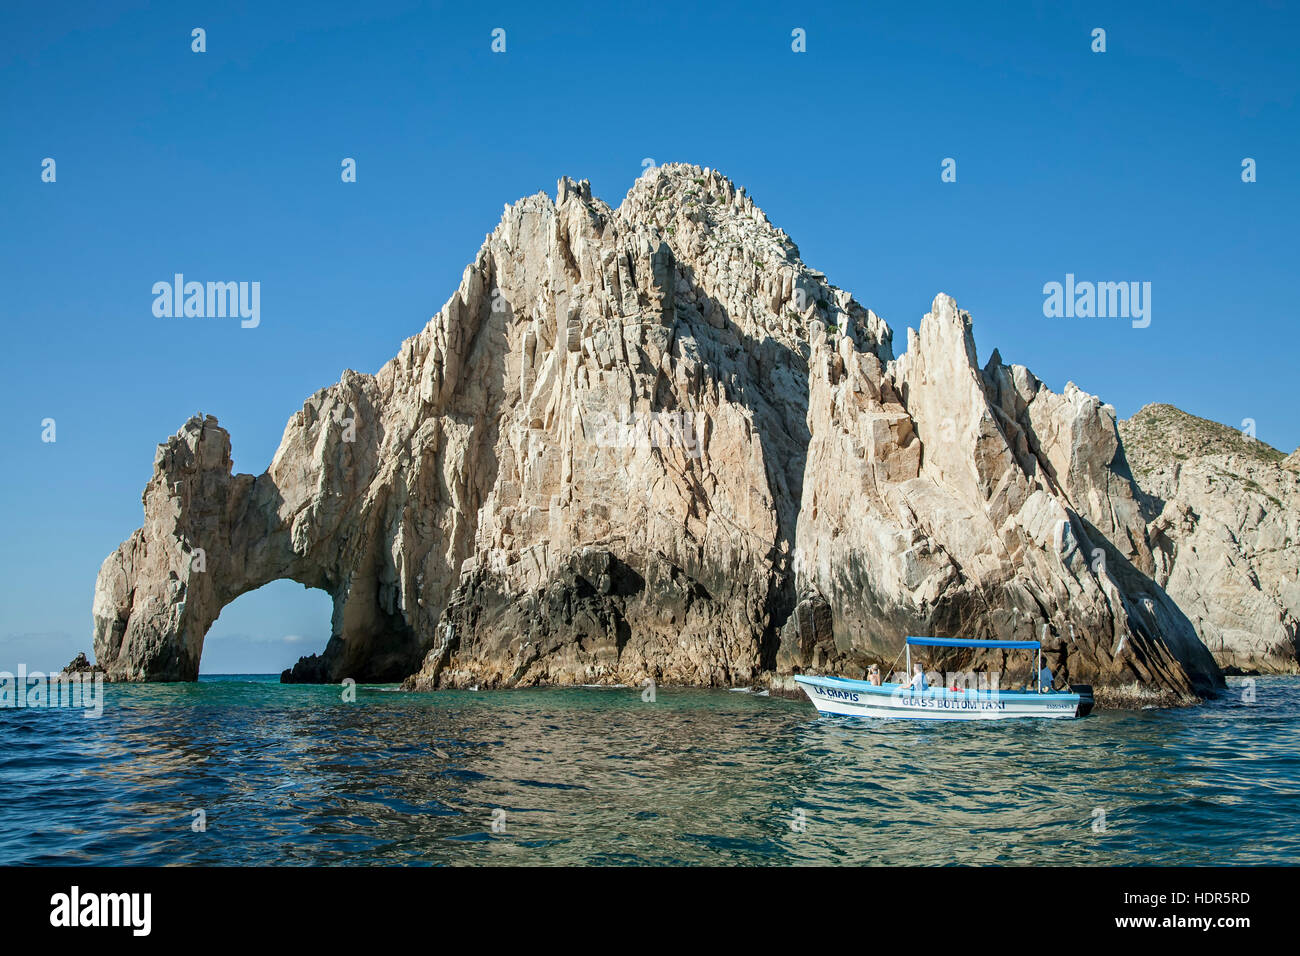 Panga (petit bateau) en El Arco (l'arche), la formation de granite près de Cabo San Lucas, Baja California Sur, Mexique Banque D'Images